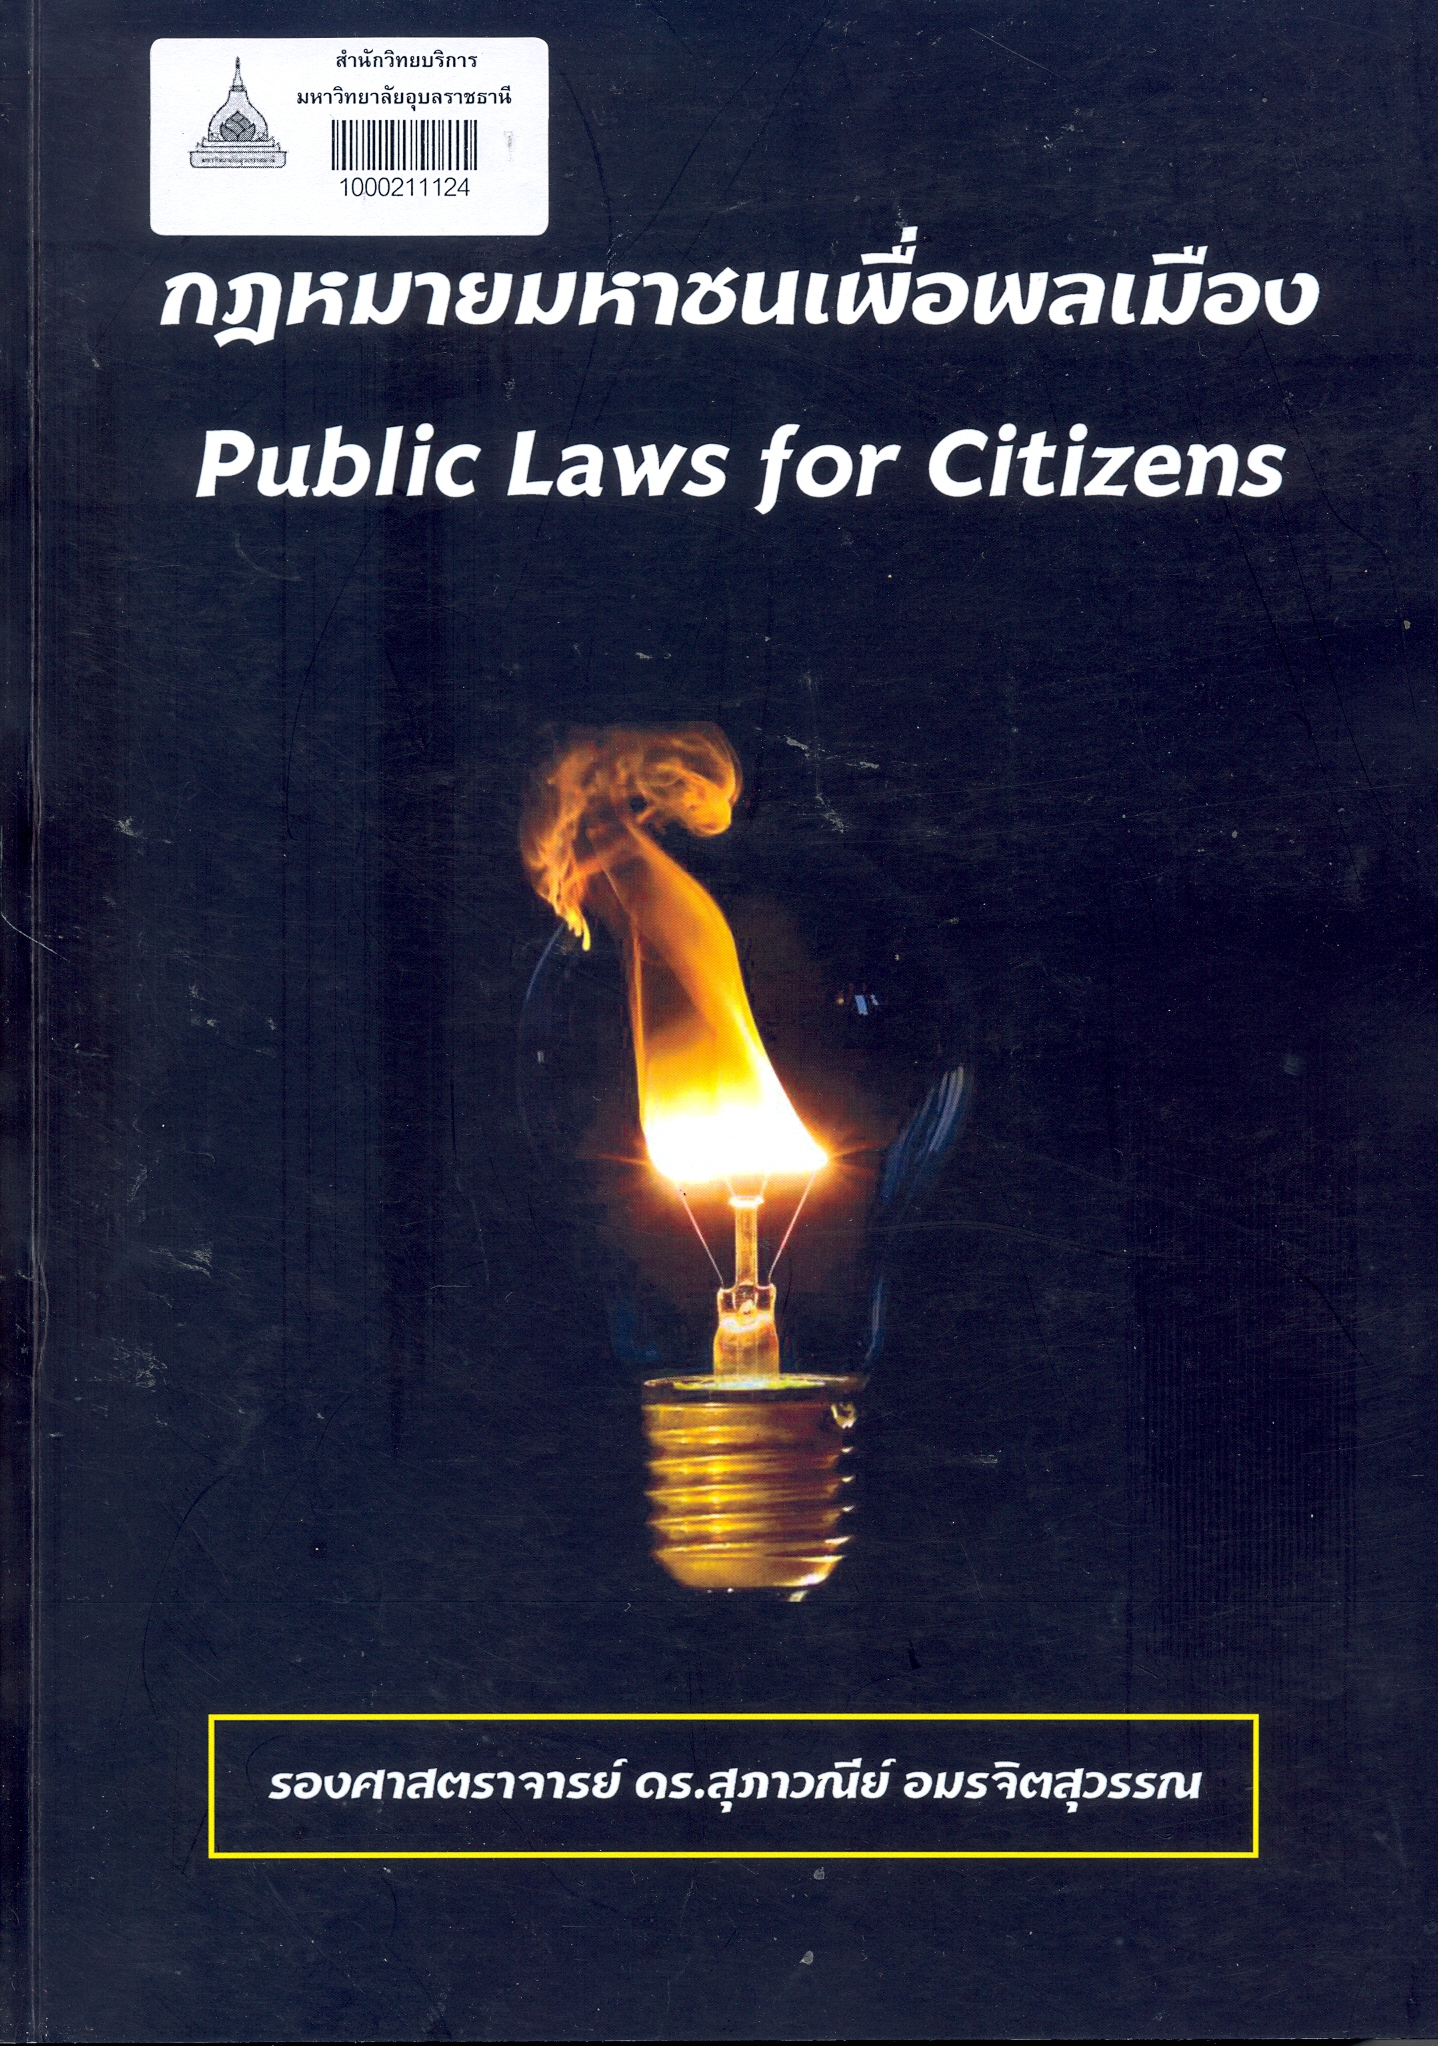 กฎหมายมหาชนเพื่อพลเมือง